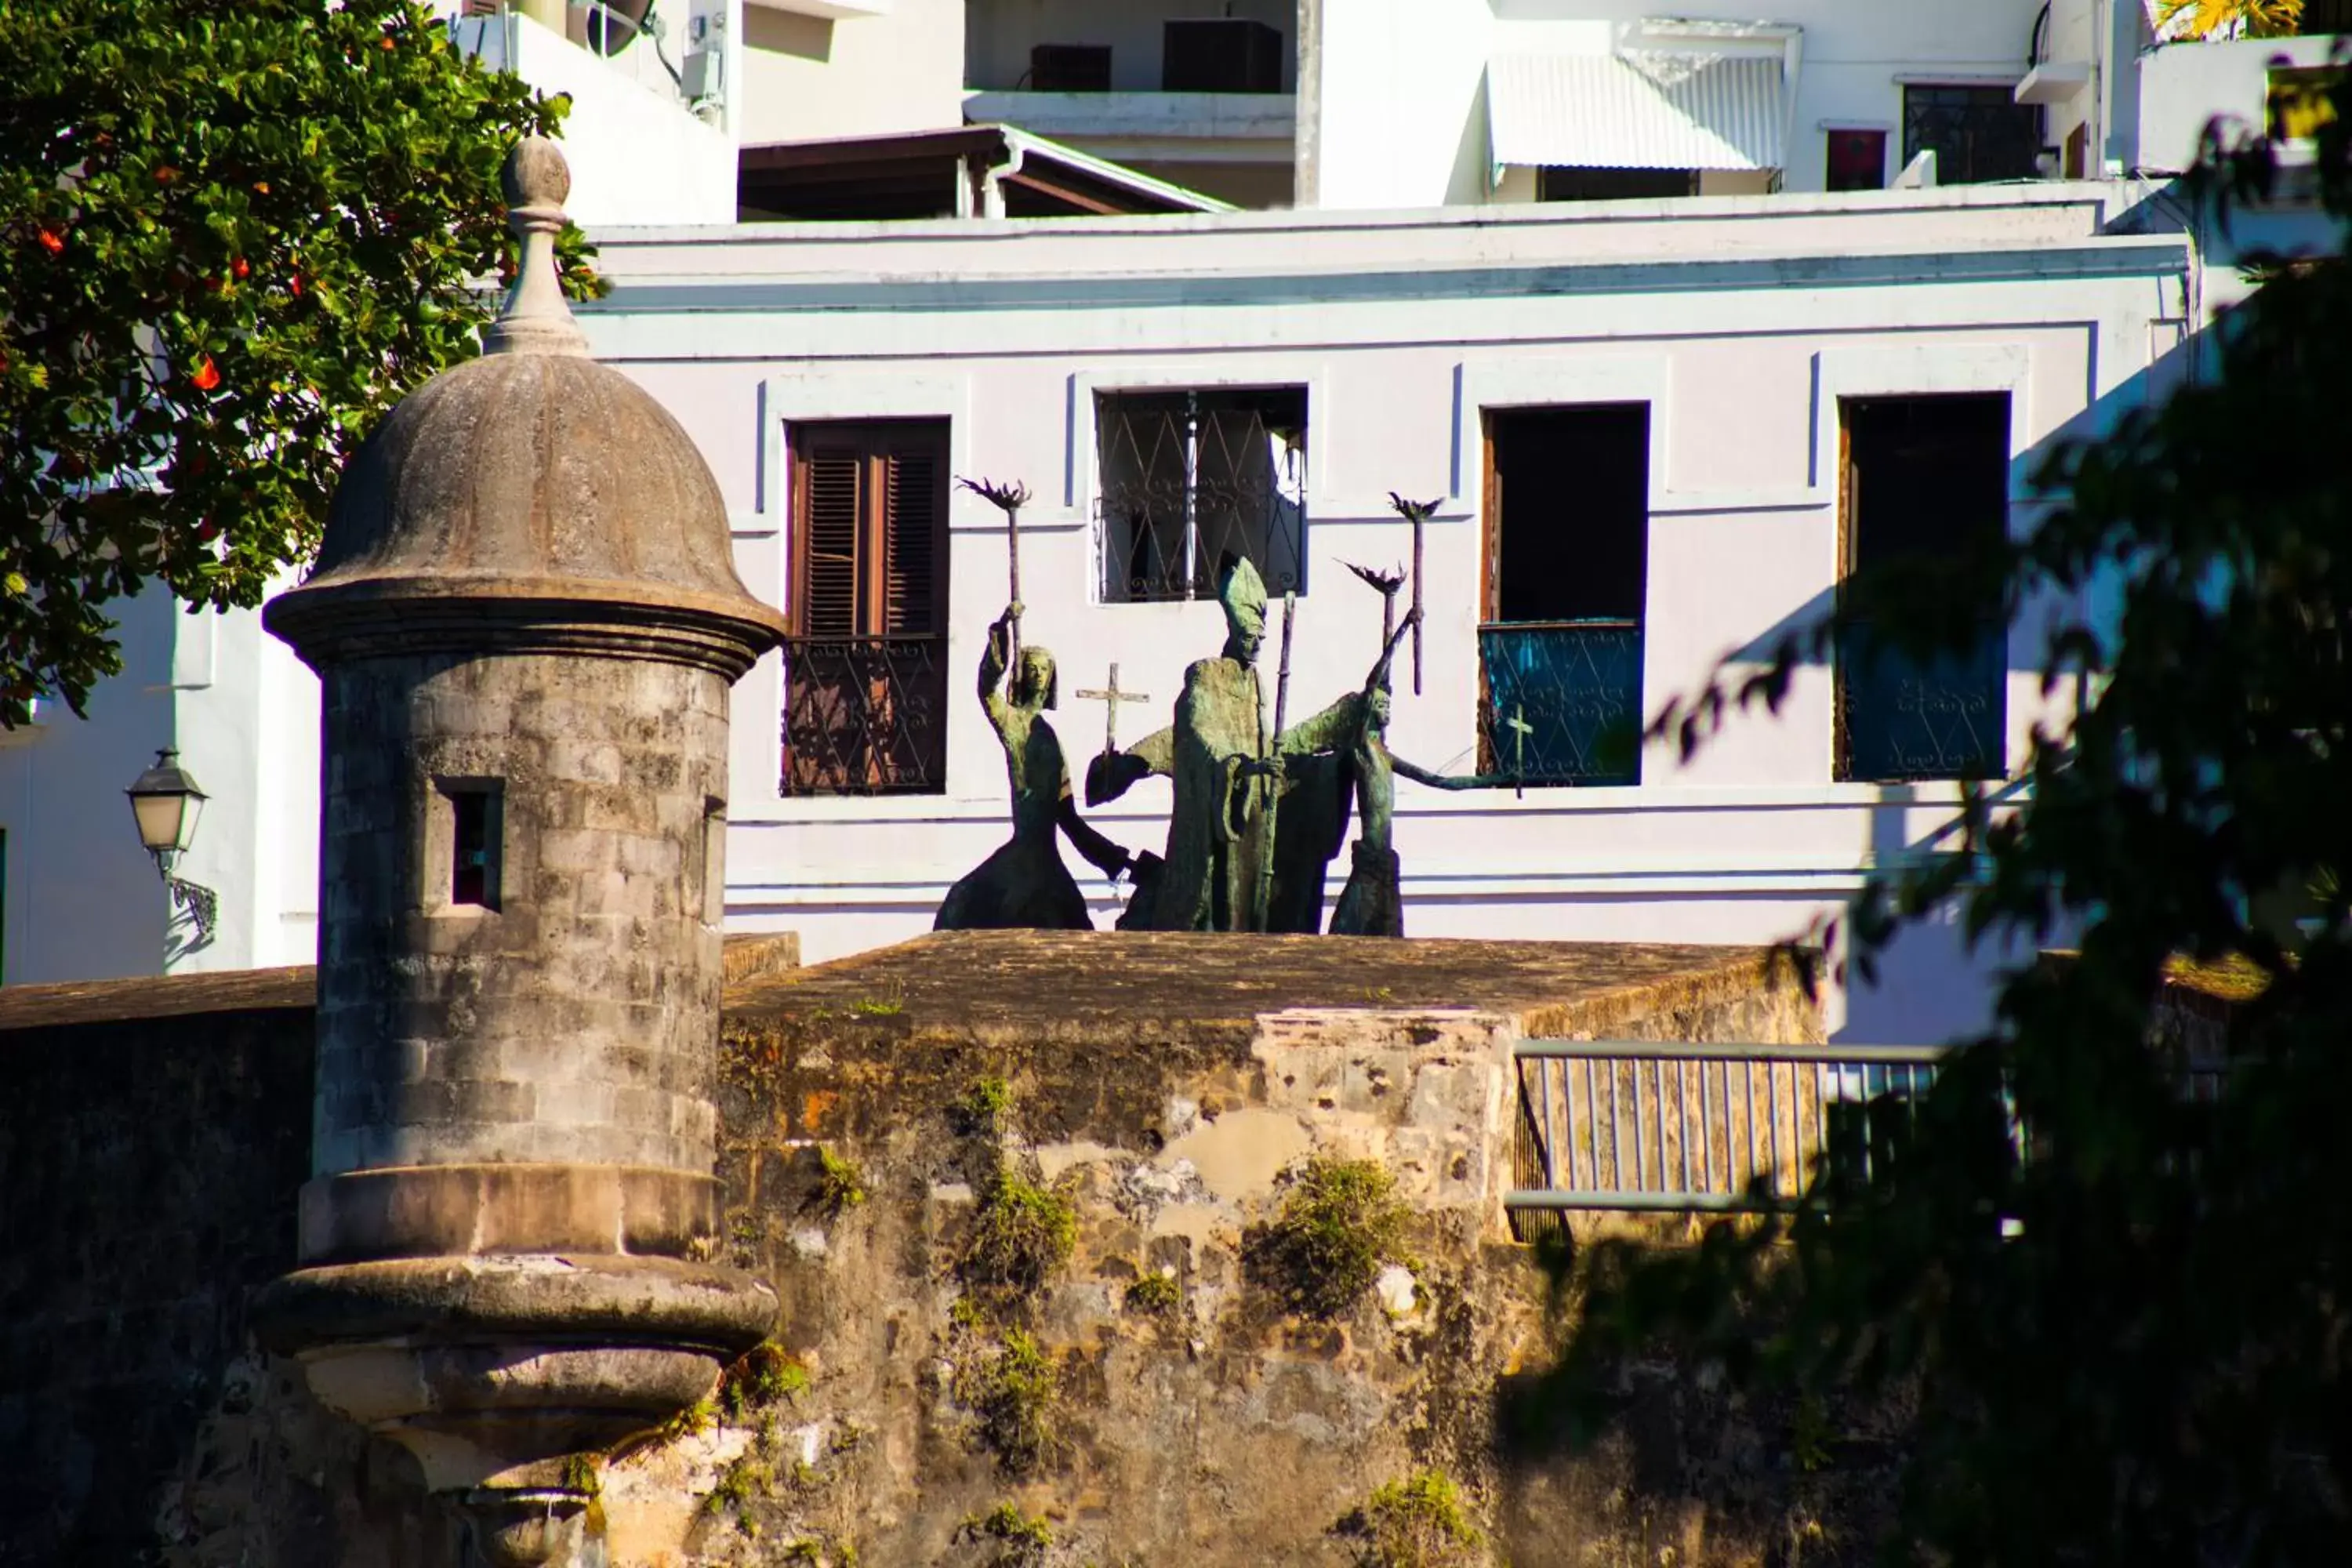 Nearby landmark, Facade/Entrance in Hotel El Convento